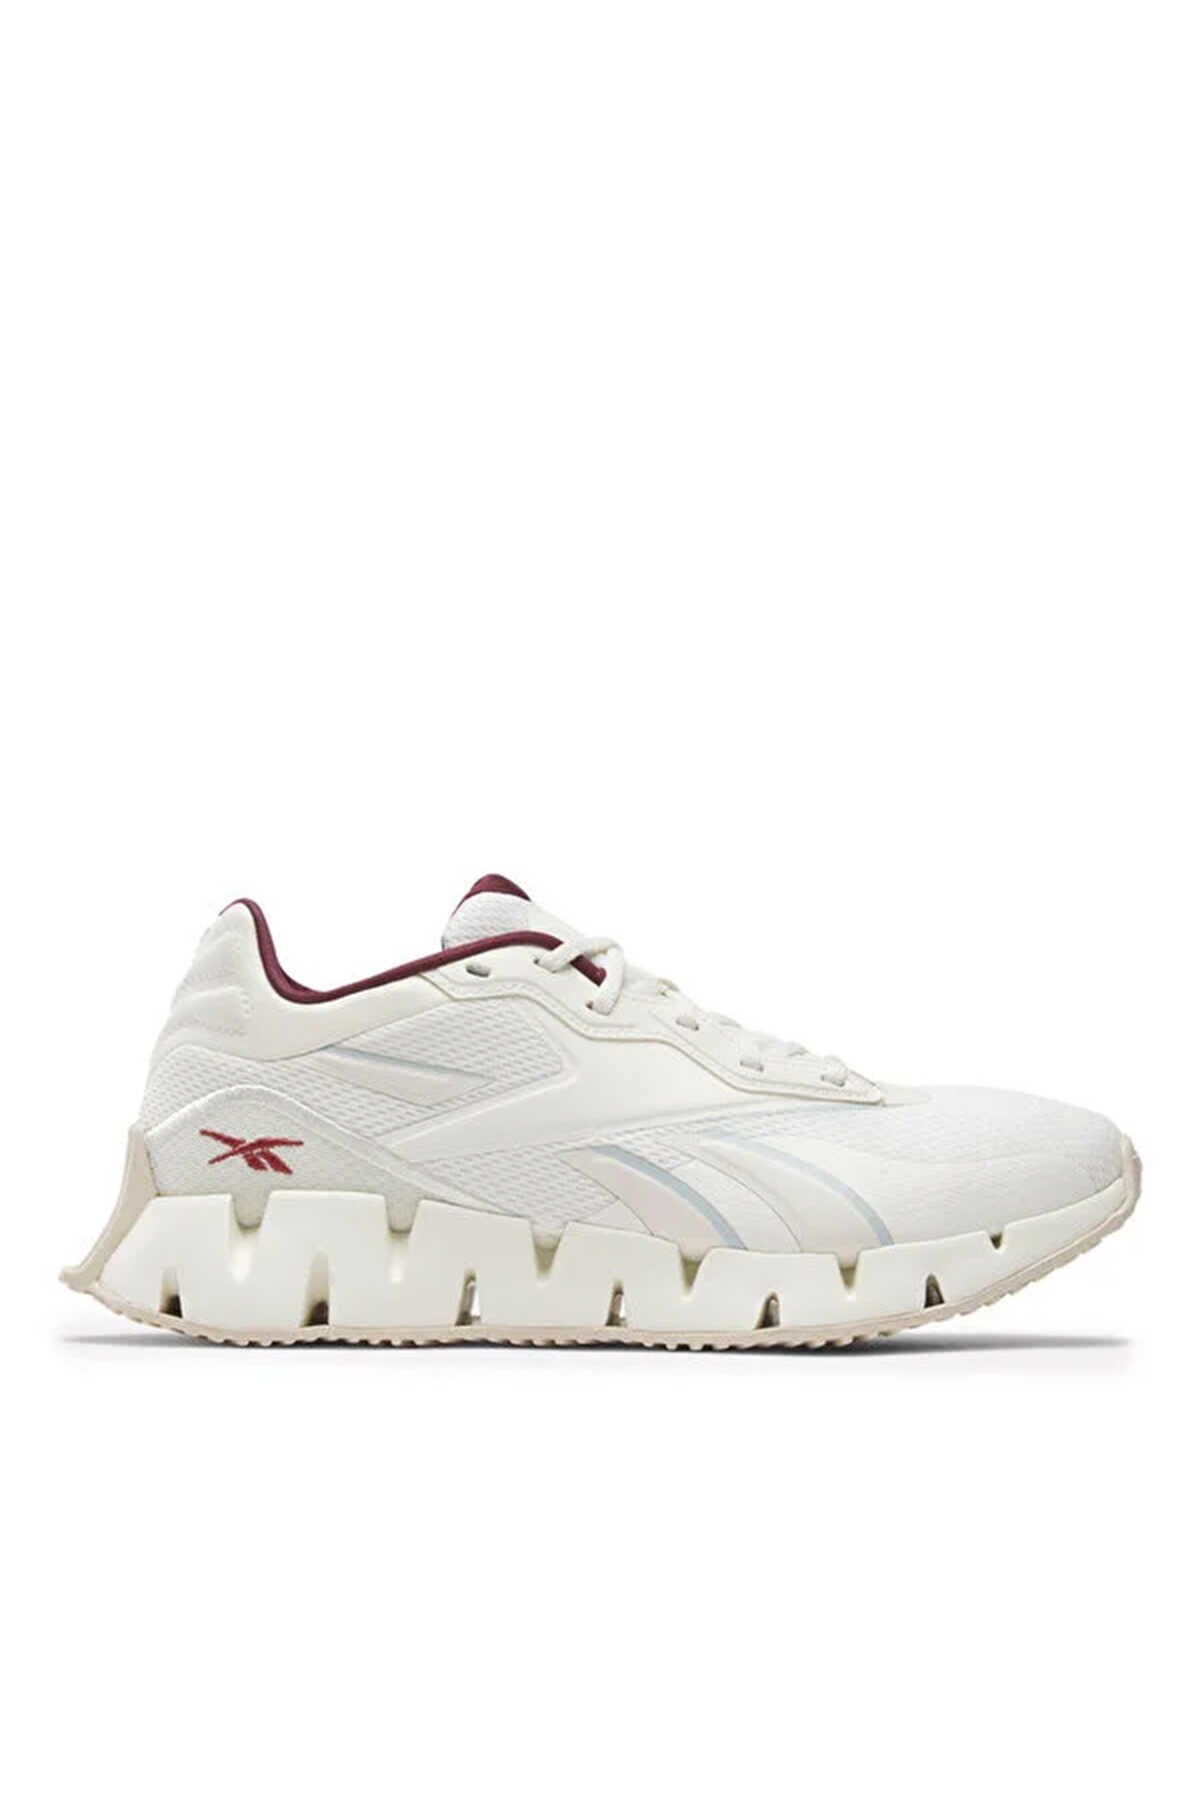 Reebok - Reebok ZIG DYNAMICA Sneaker Kadın Ayakkabı Kırık Beyaz_0